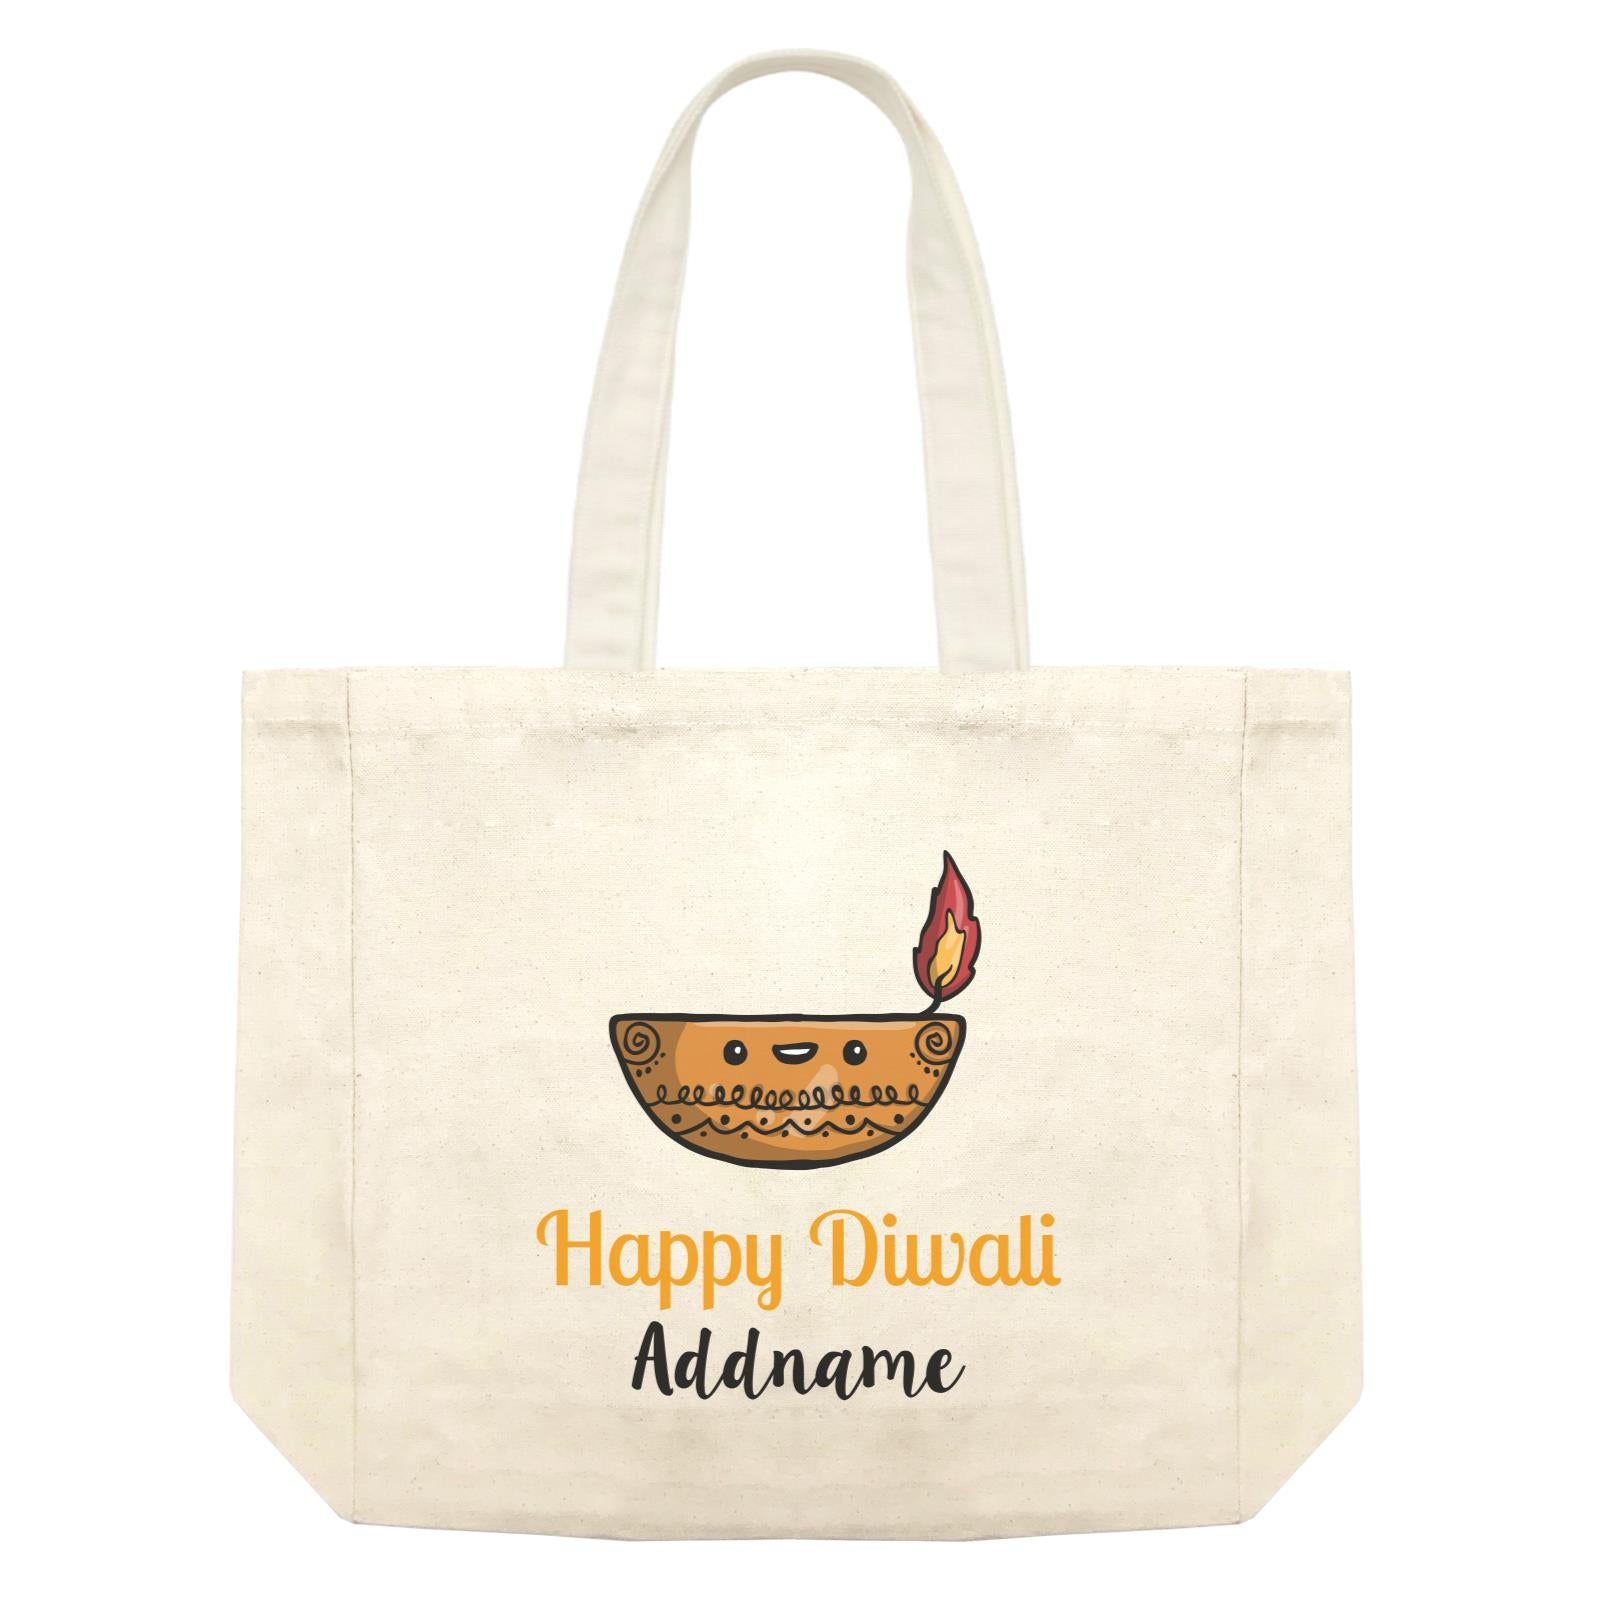 Cute Round Diyas Happy Diwali Addname Shopping Bag